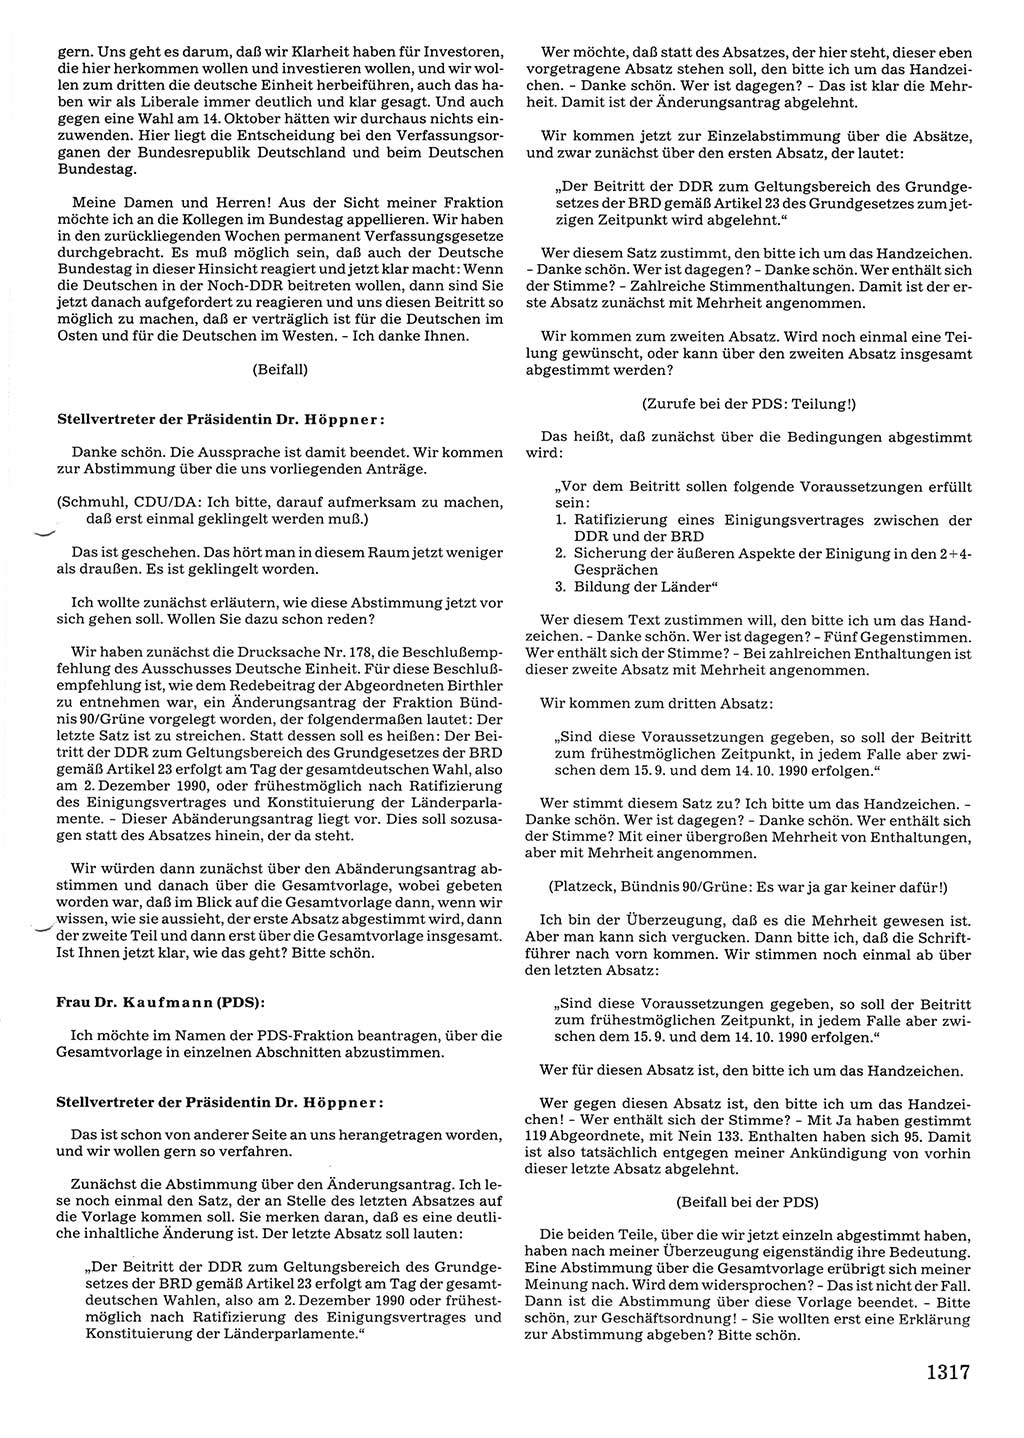 Tagungen der Volkskammer (VK) der Deutschen Demokratischen Republik (DDR), 10. Wahlperiode 1990, Seite 1317 (VK. DDR 10. WP. 1990, Prot. Tg. 1-38, 5.4.-2.10.1990, S. 1317)